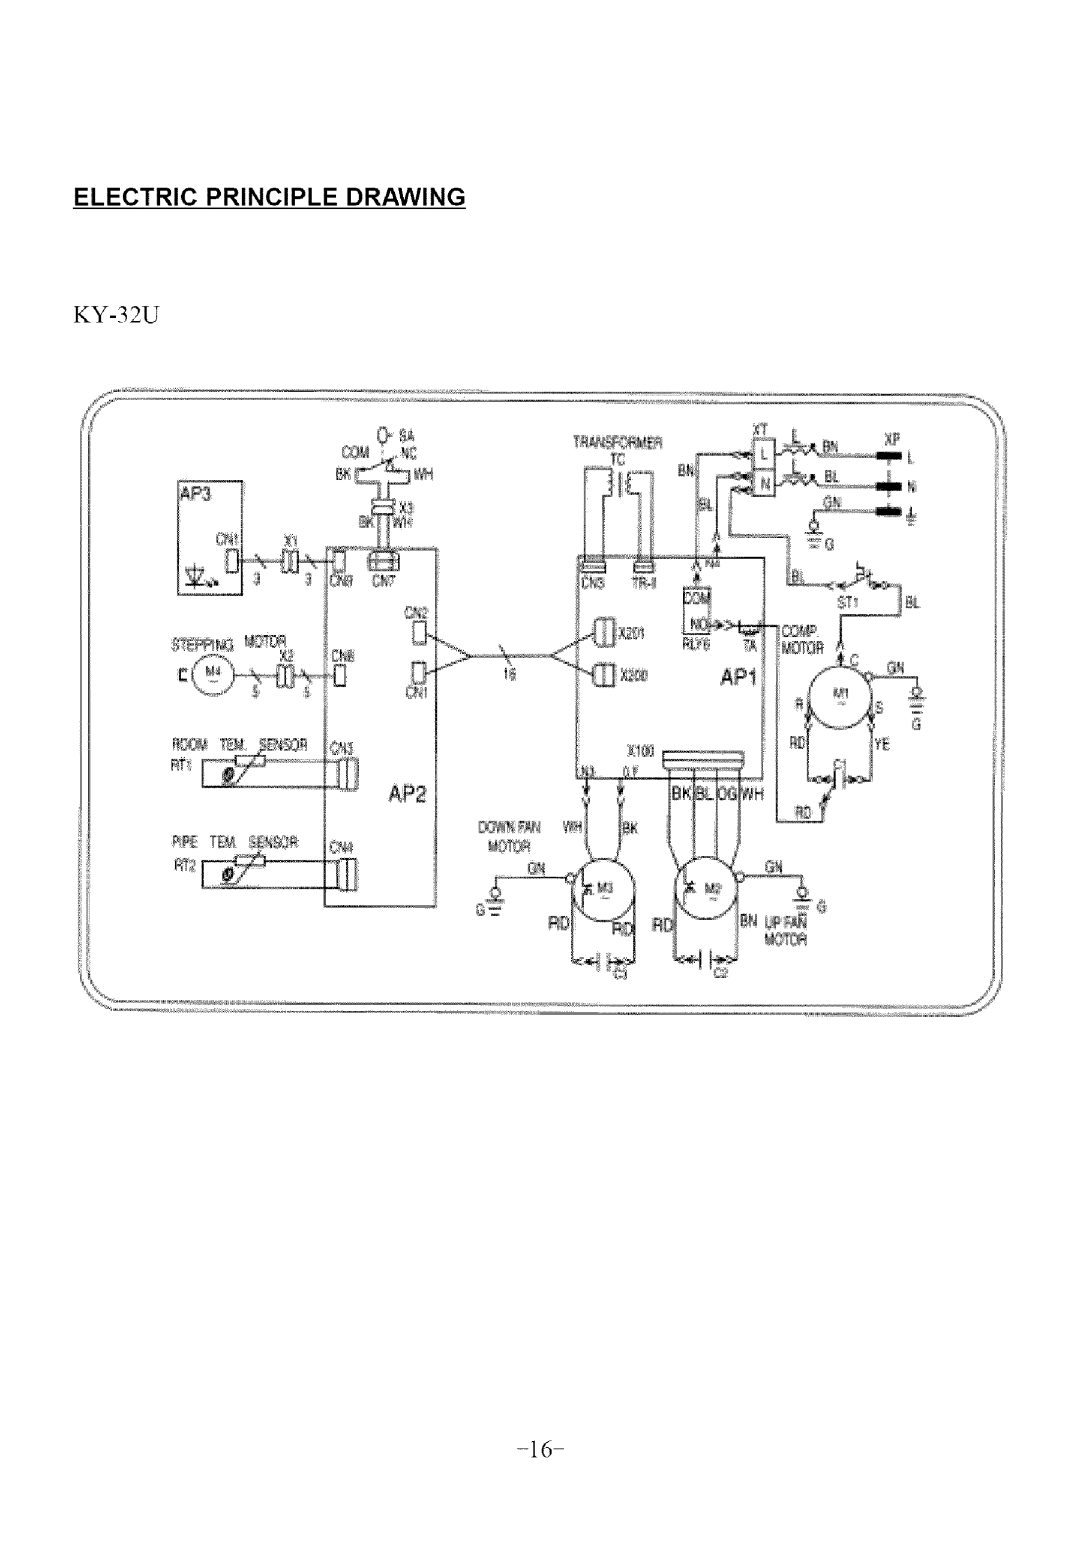 Soleus Air KY-32U user manual Electric Principle Drawing 